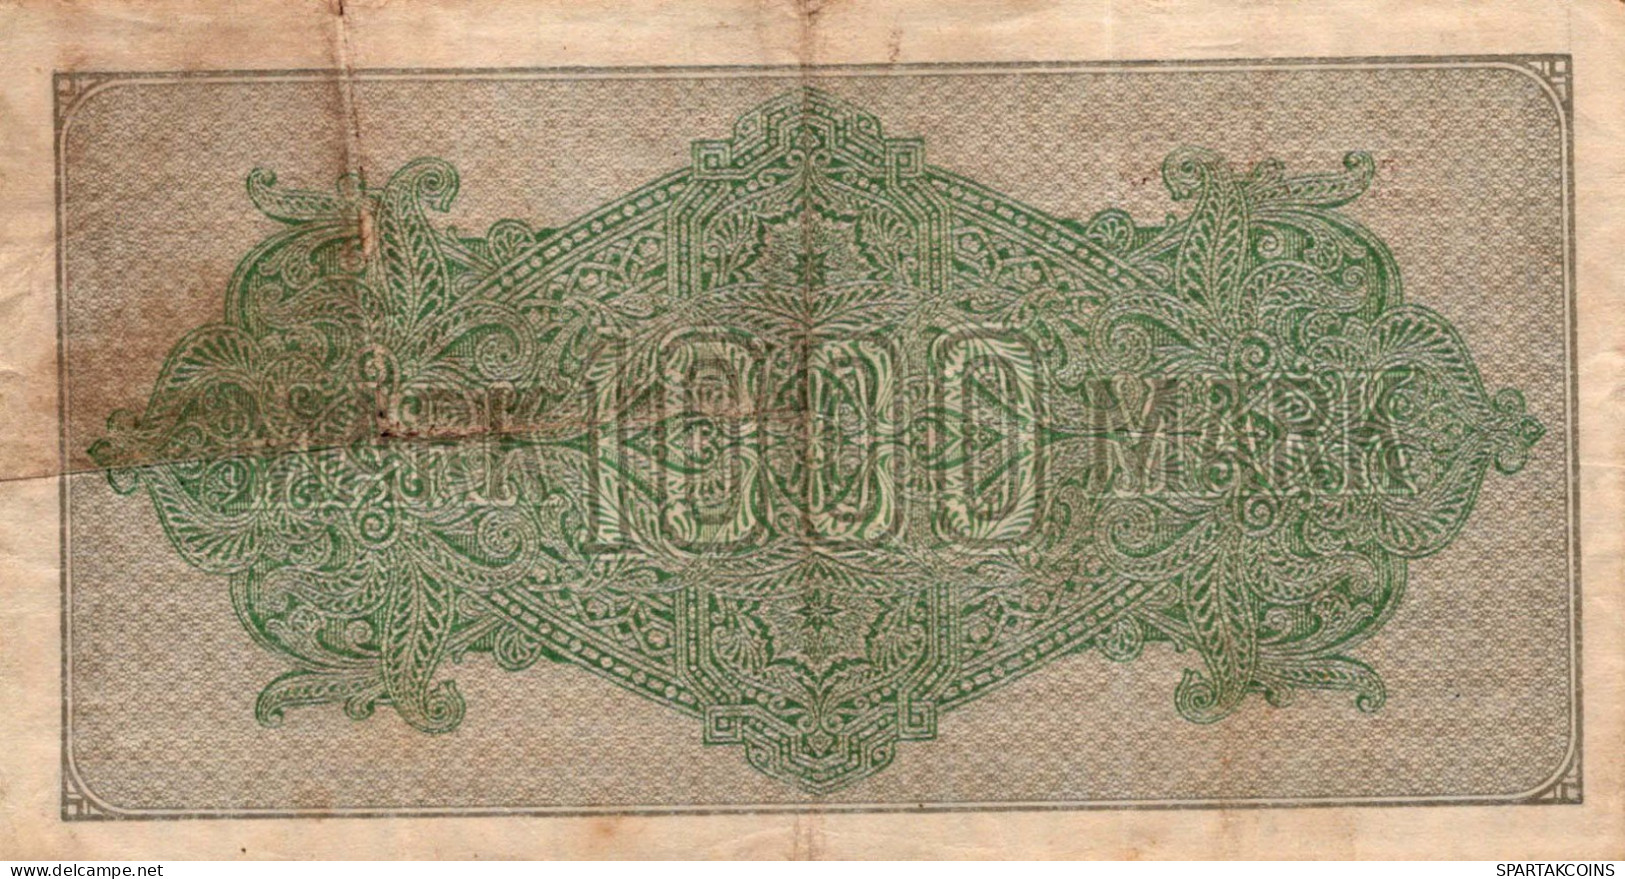 1000 MARK 1922 Stadt BERLIN DEUTSCHLAND Papiergeld Banknote #PL426 - [11] Emissioni Locali